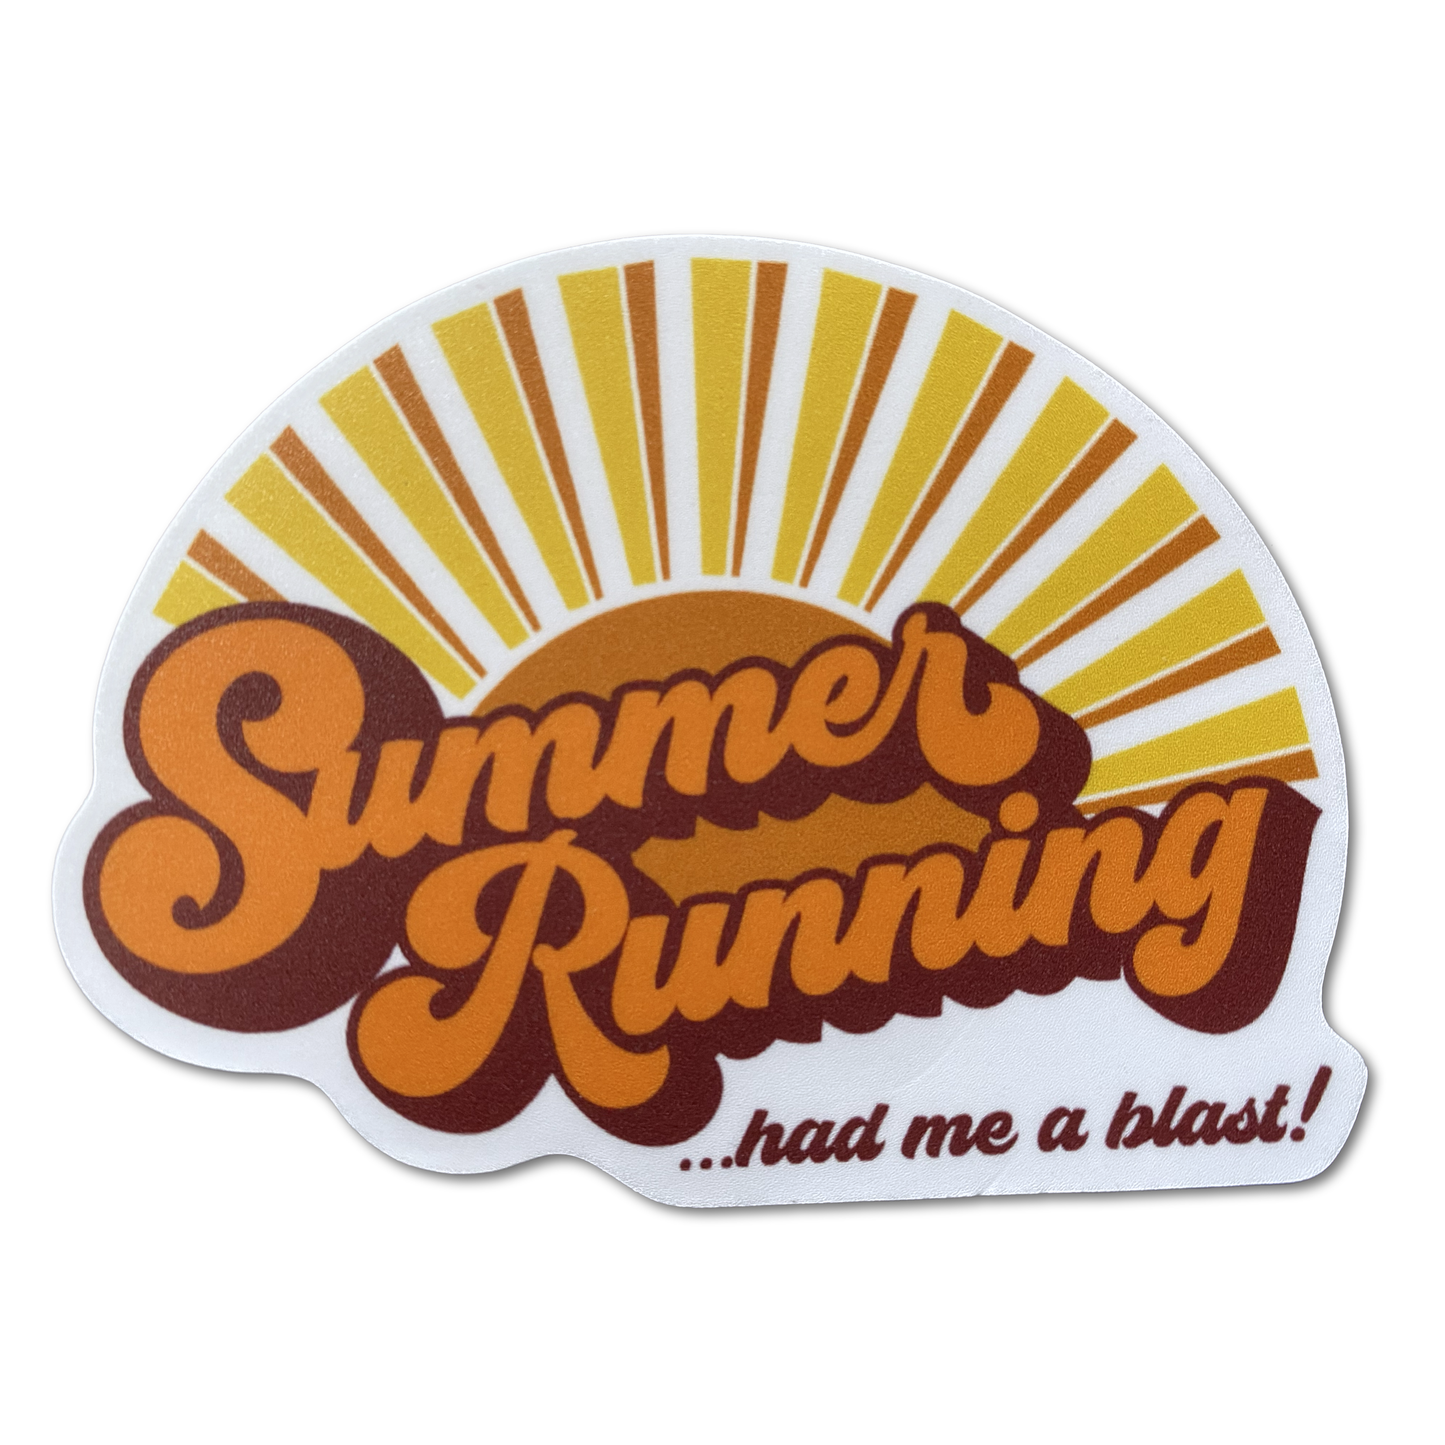 Summer Running Had Me A Blast - Die Cut Vinyl Sticker